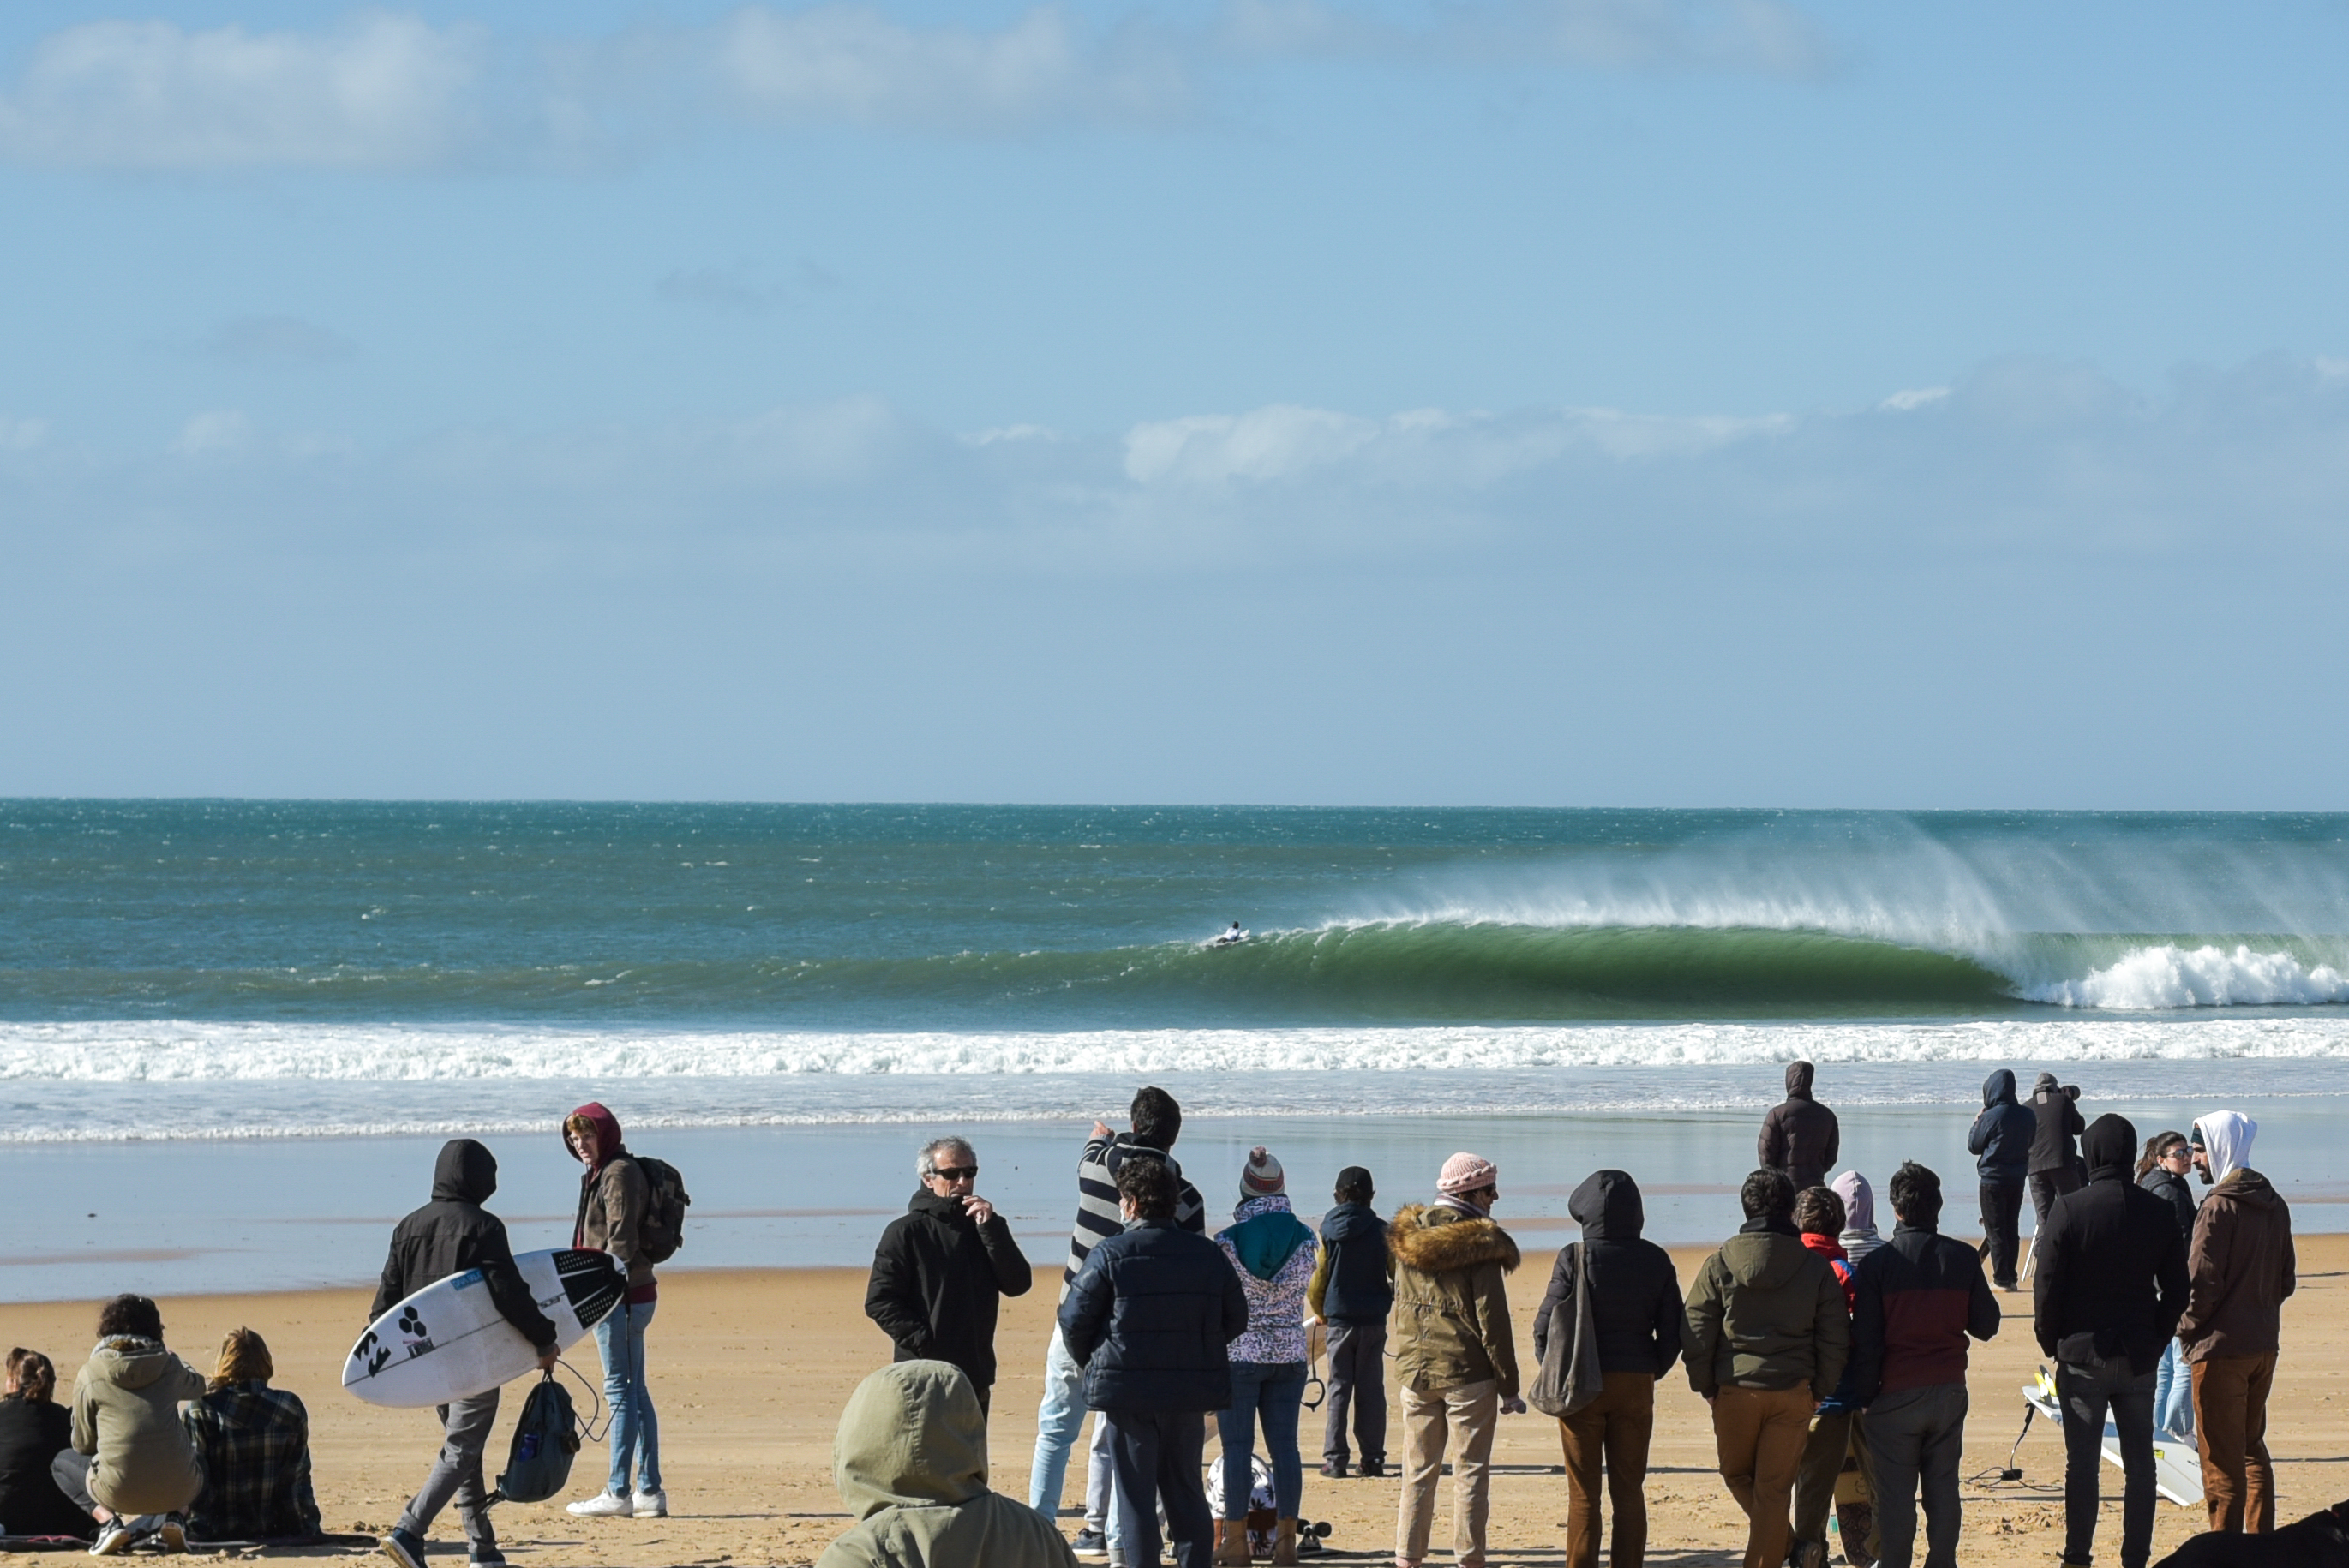 “O tubo é o auge do surfe”, diz Lucas Silveira.